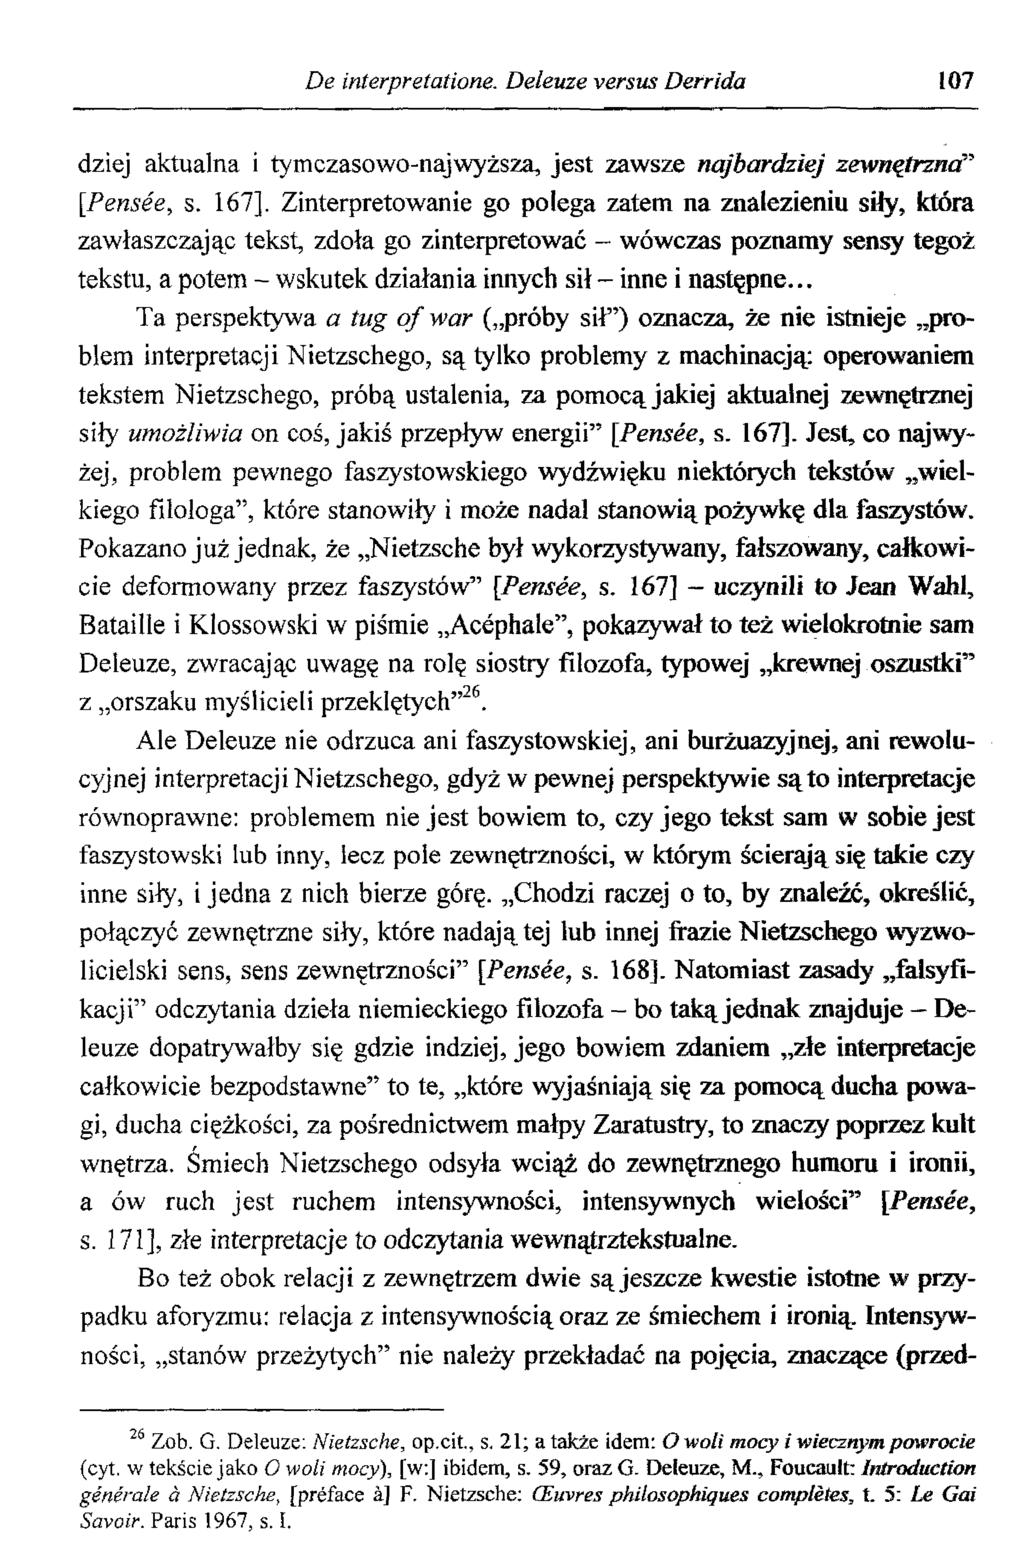 De interpretatione. Deleuze versus Derrida 107 dziej aktualna i tym czasowo-naj wyższa, jest zawsze najbardziej zewnętrzna [Pensée, s.